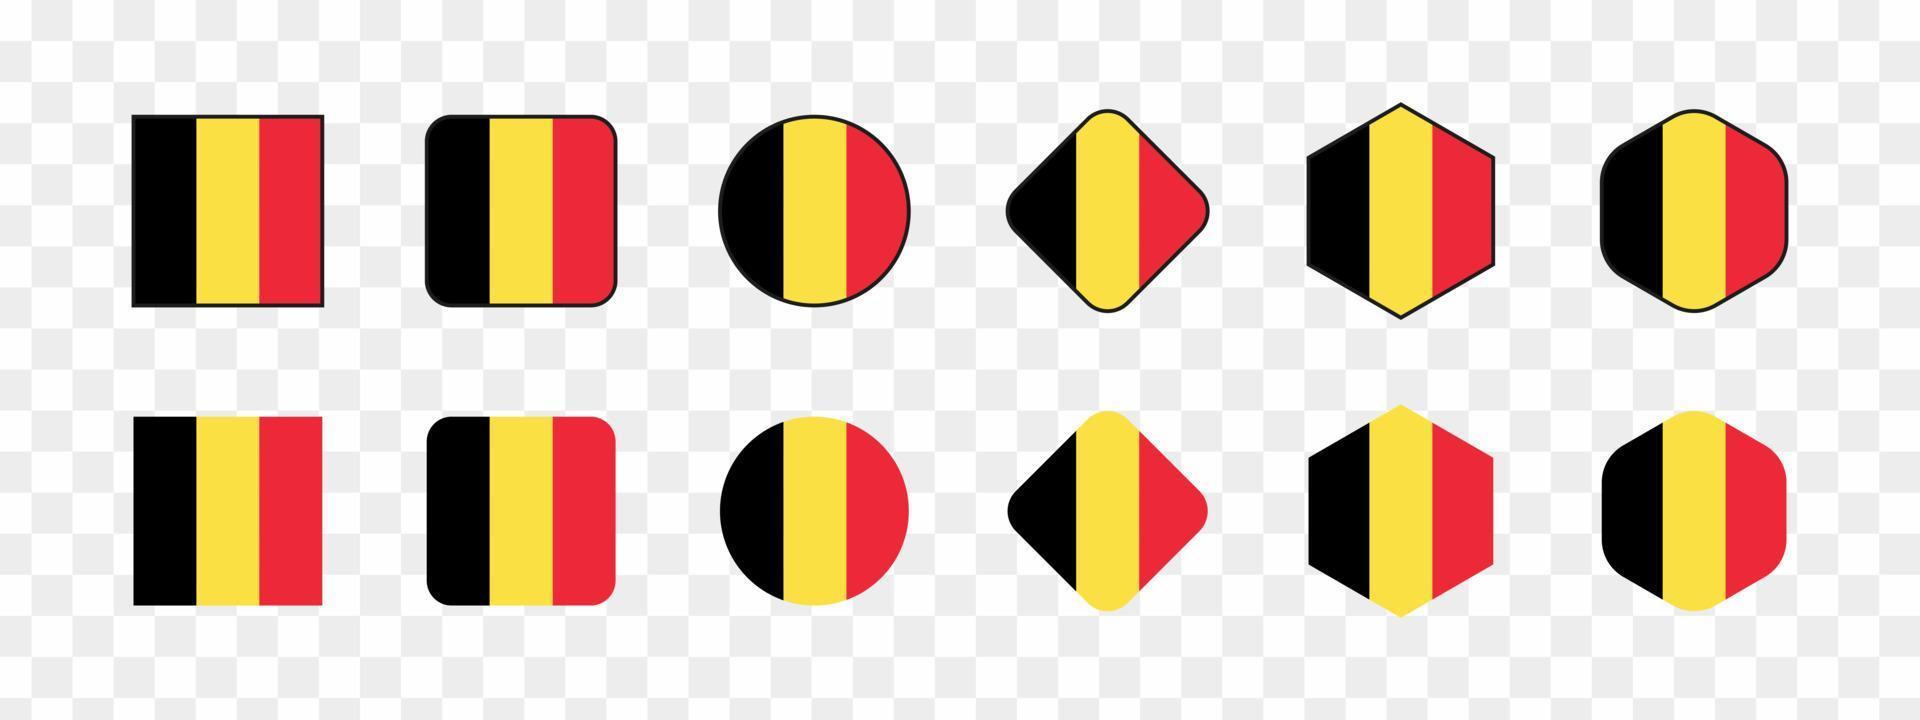 Vektor-Belgien-Flagge, Illustration der belgischen Flagge, Bild der belgischen Flagge, Bild der belgischen Flagge, Vektorillustration vektor